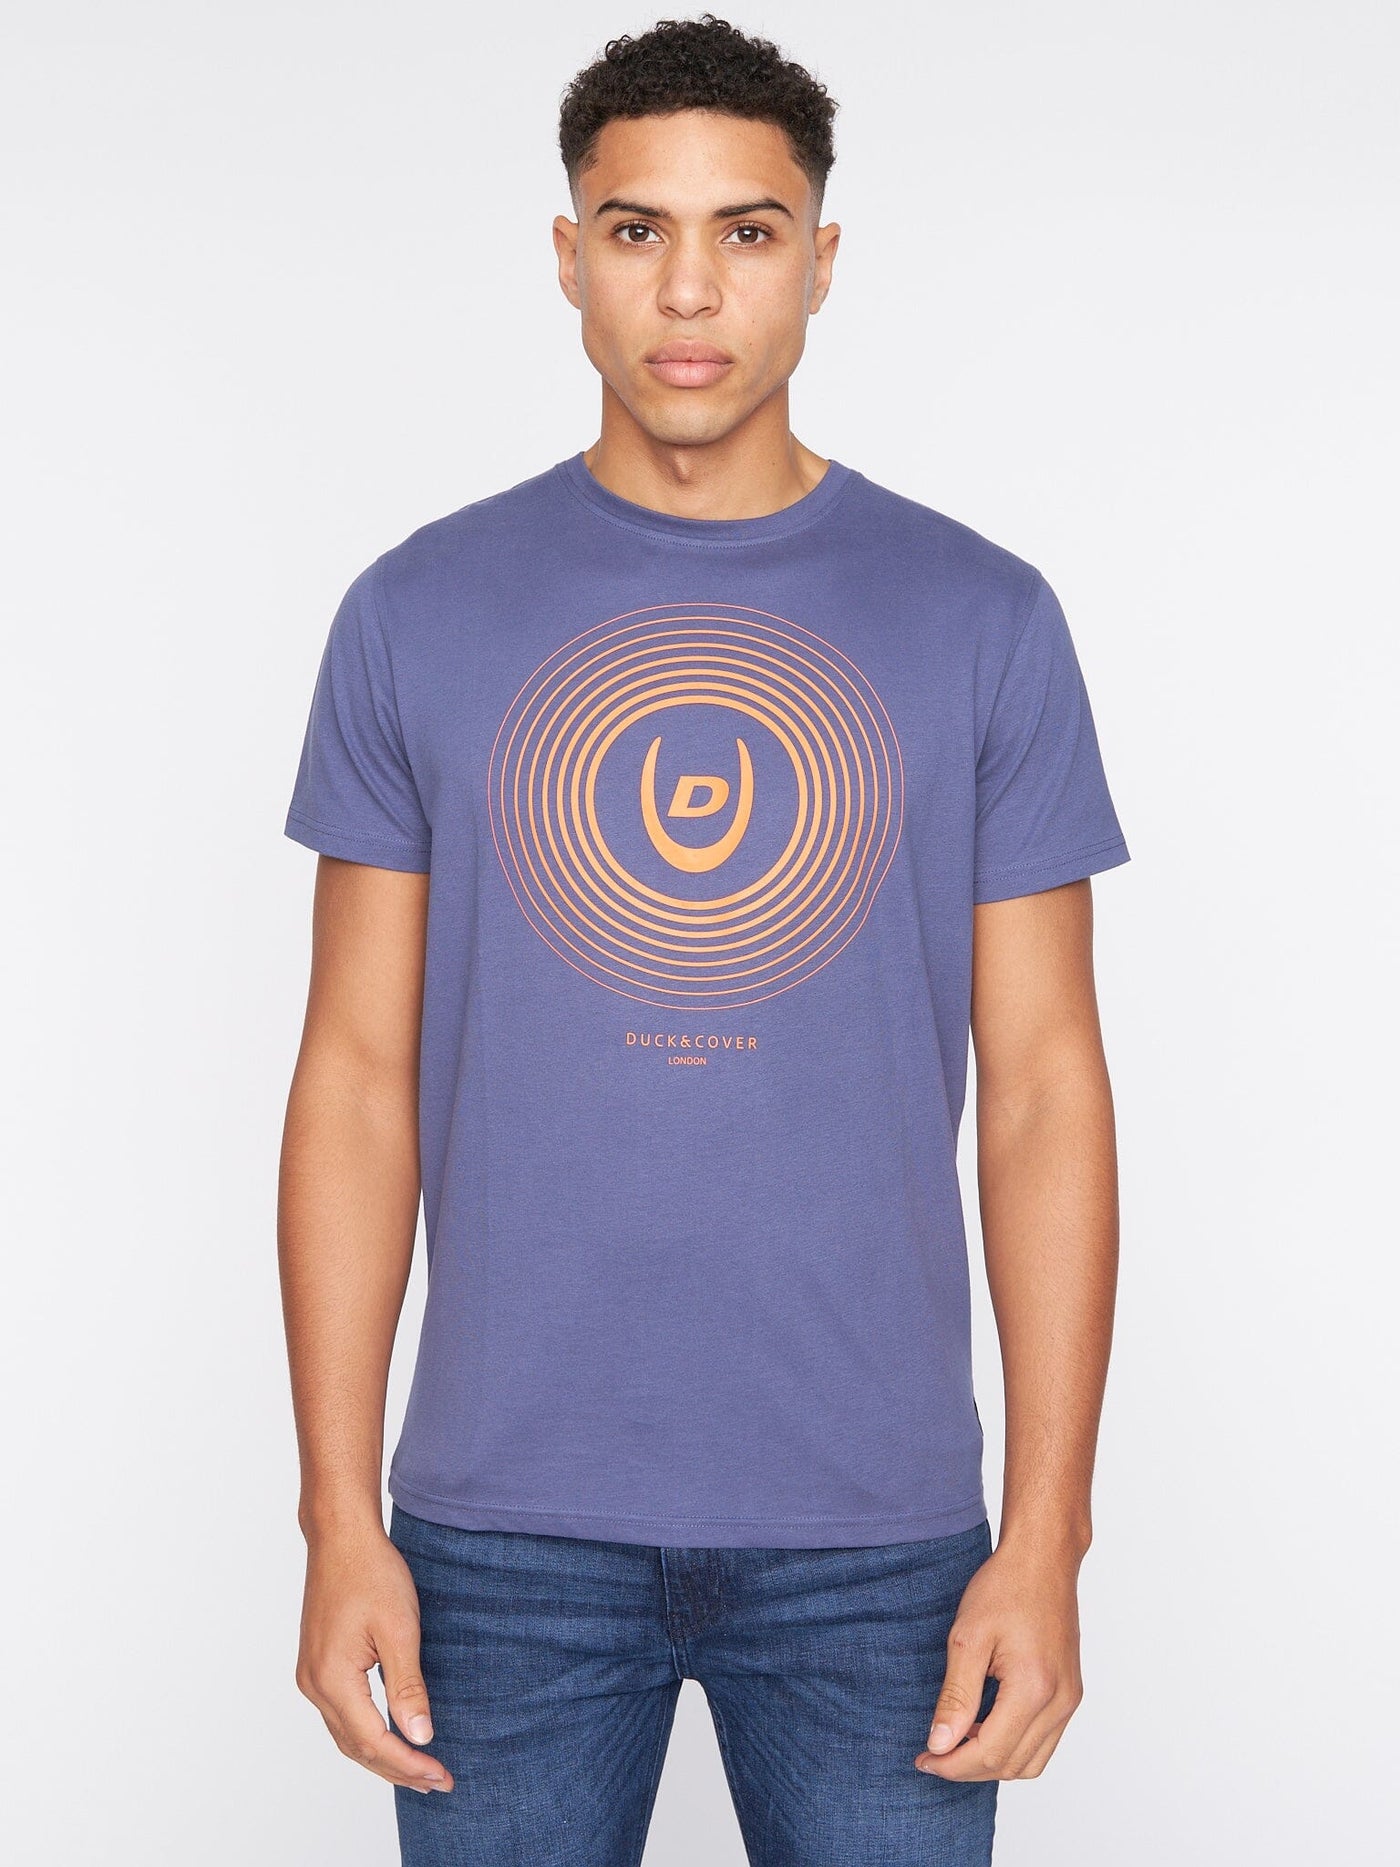 Zoomout T-Shirt Denim Blue